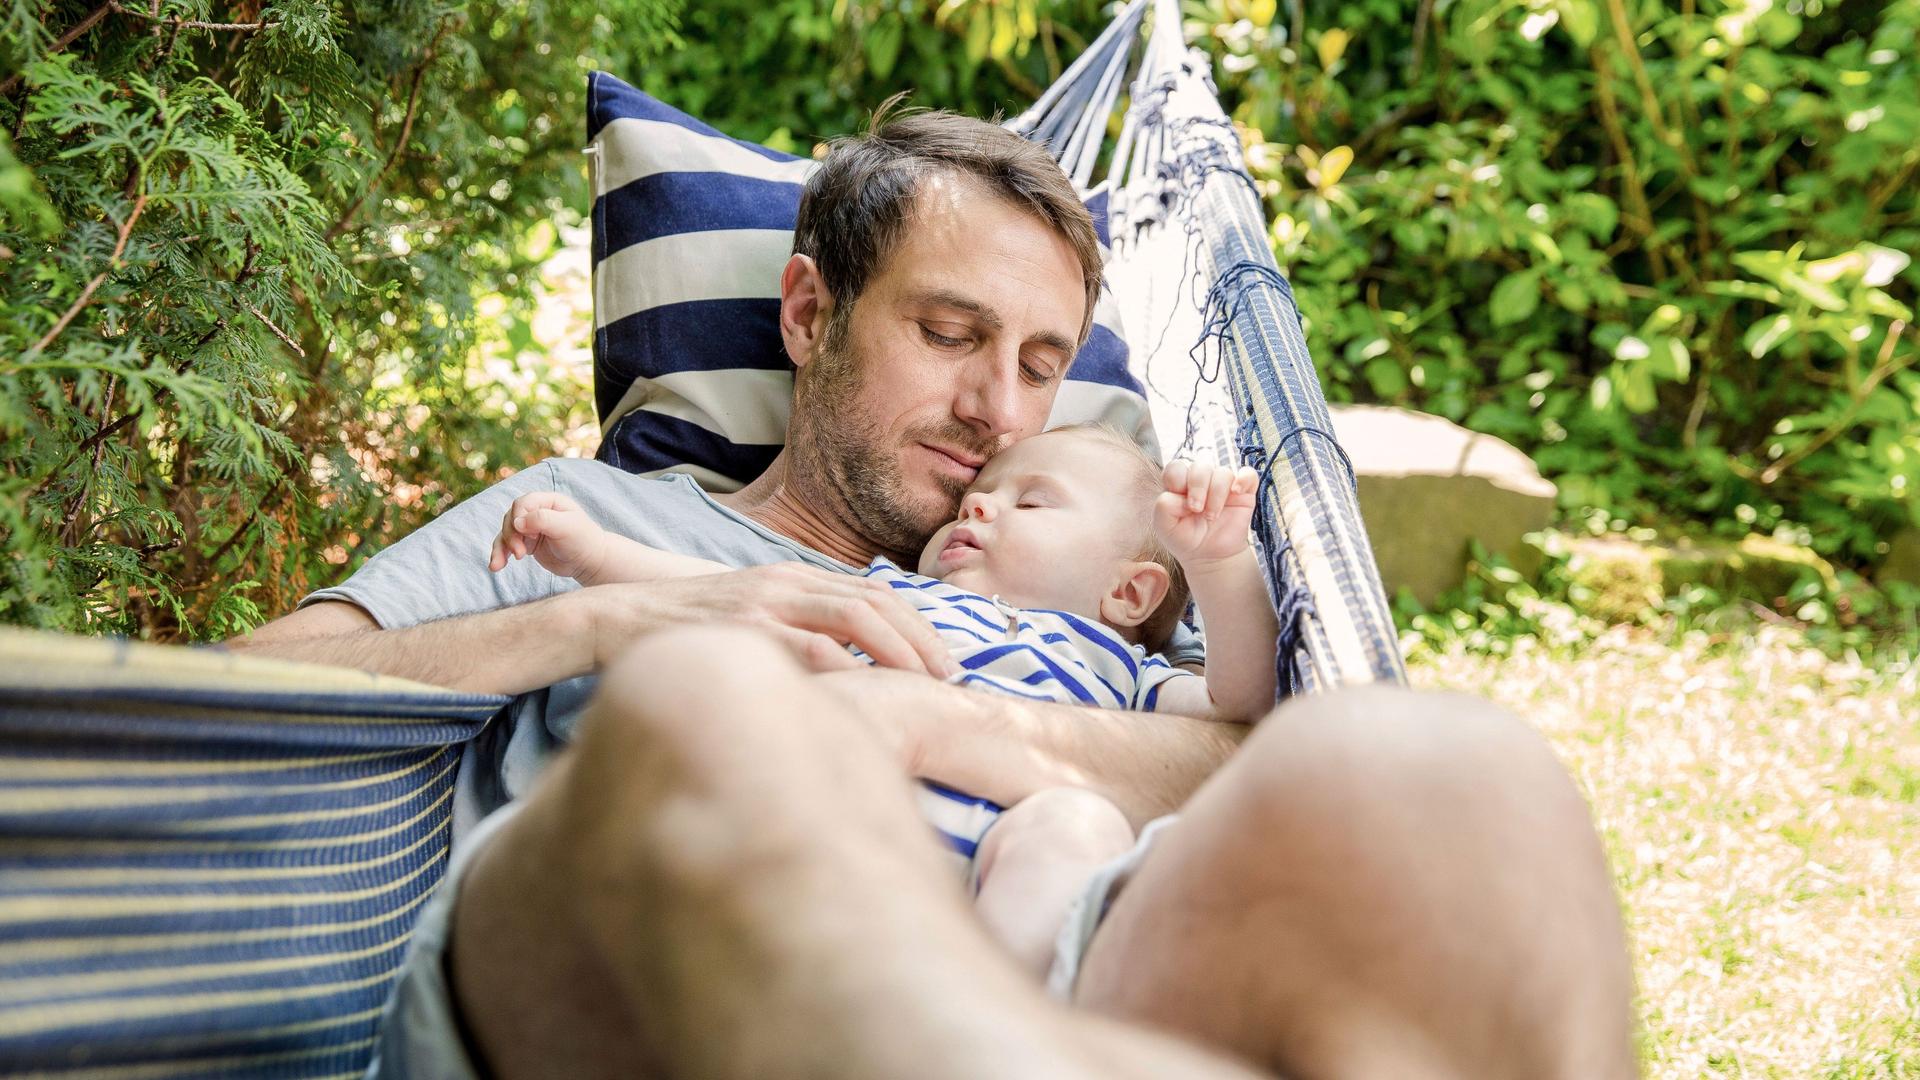 Porträt eines Vaters mit Baby, das in der Hängematte schläft, bei sommerlichen Temperaturen.